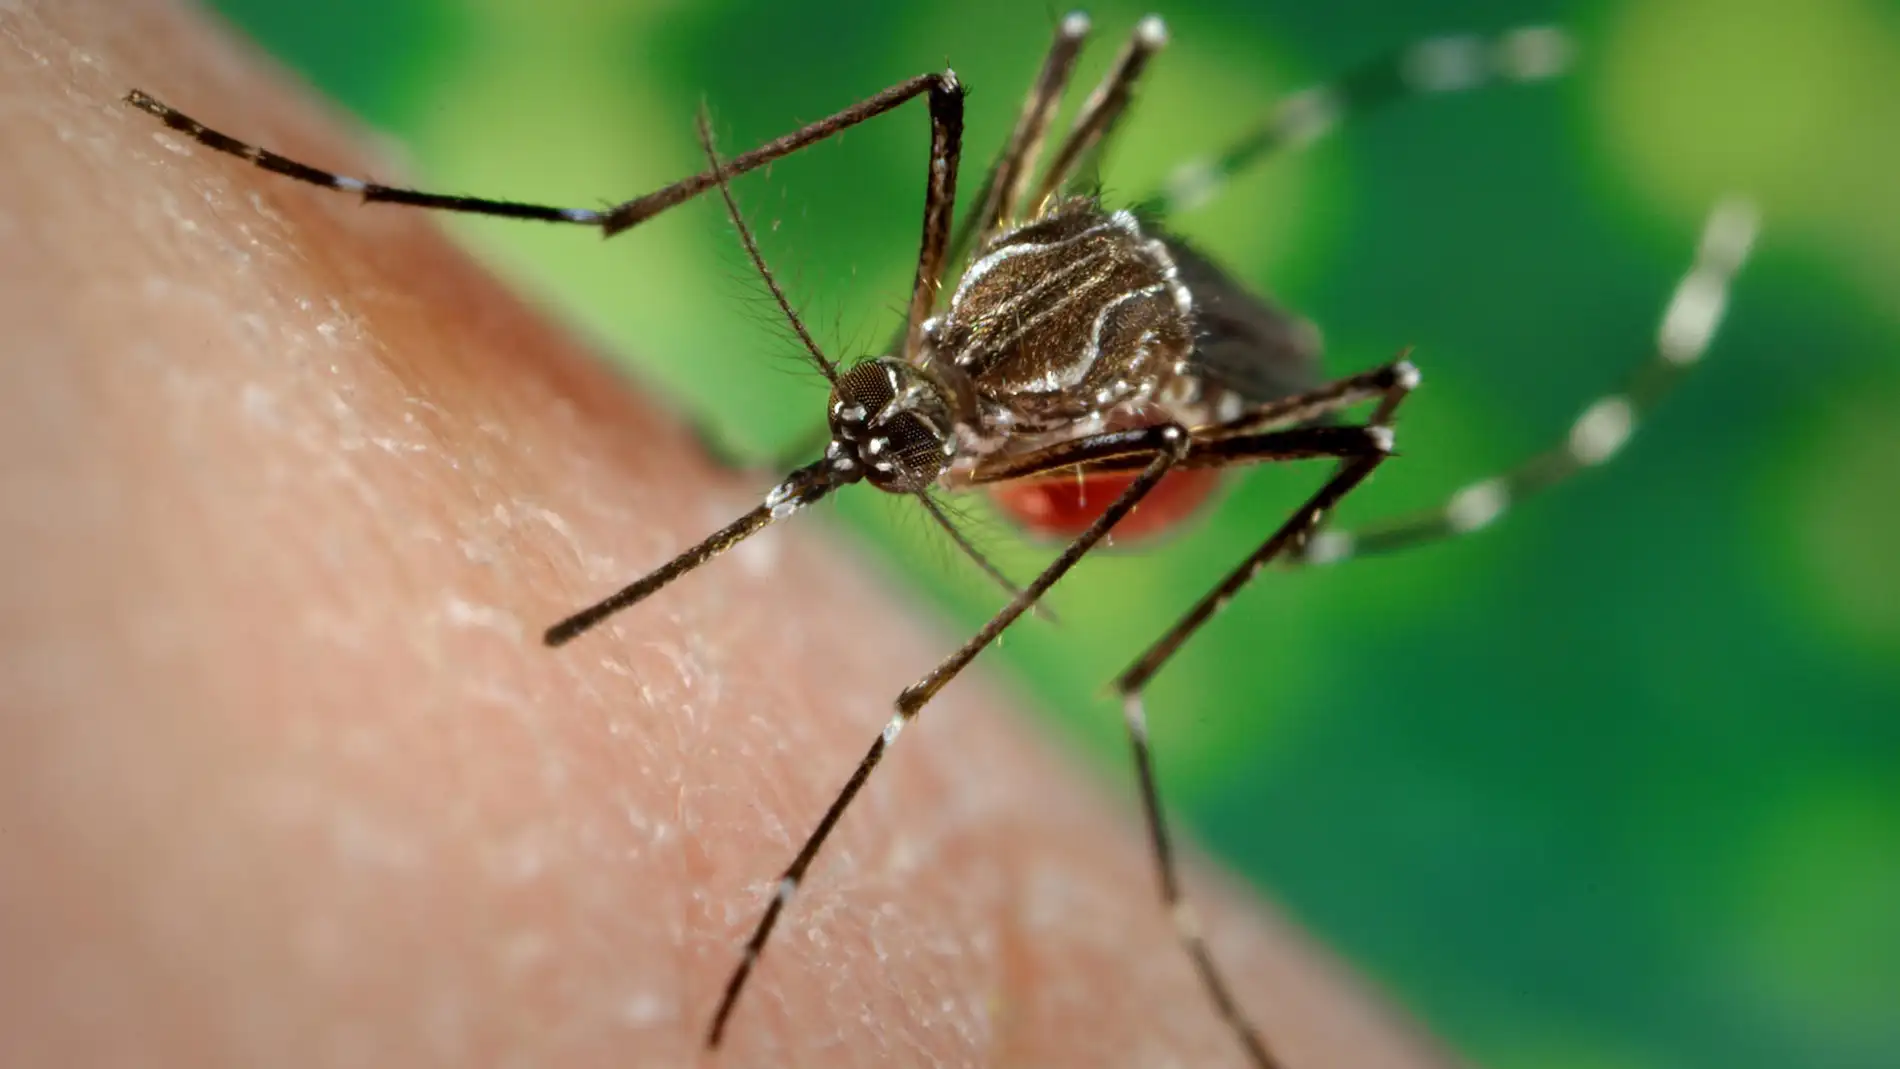 Una hembra de una cepa de mosquitos llamada LVP-IB12